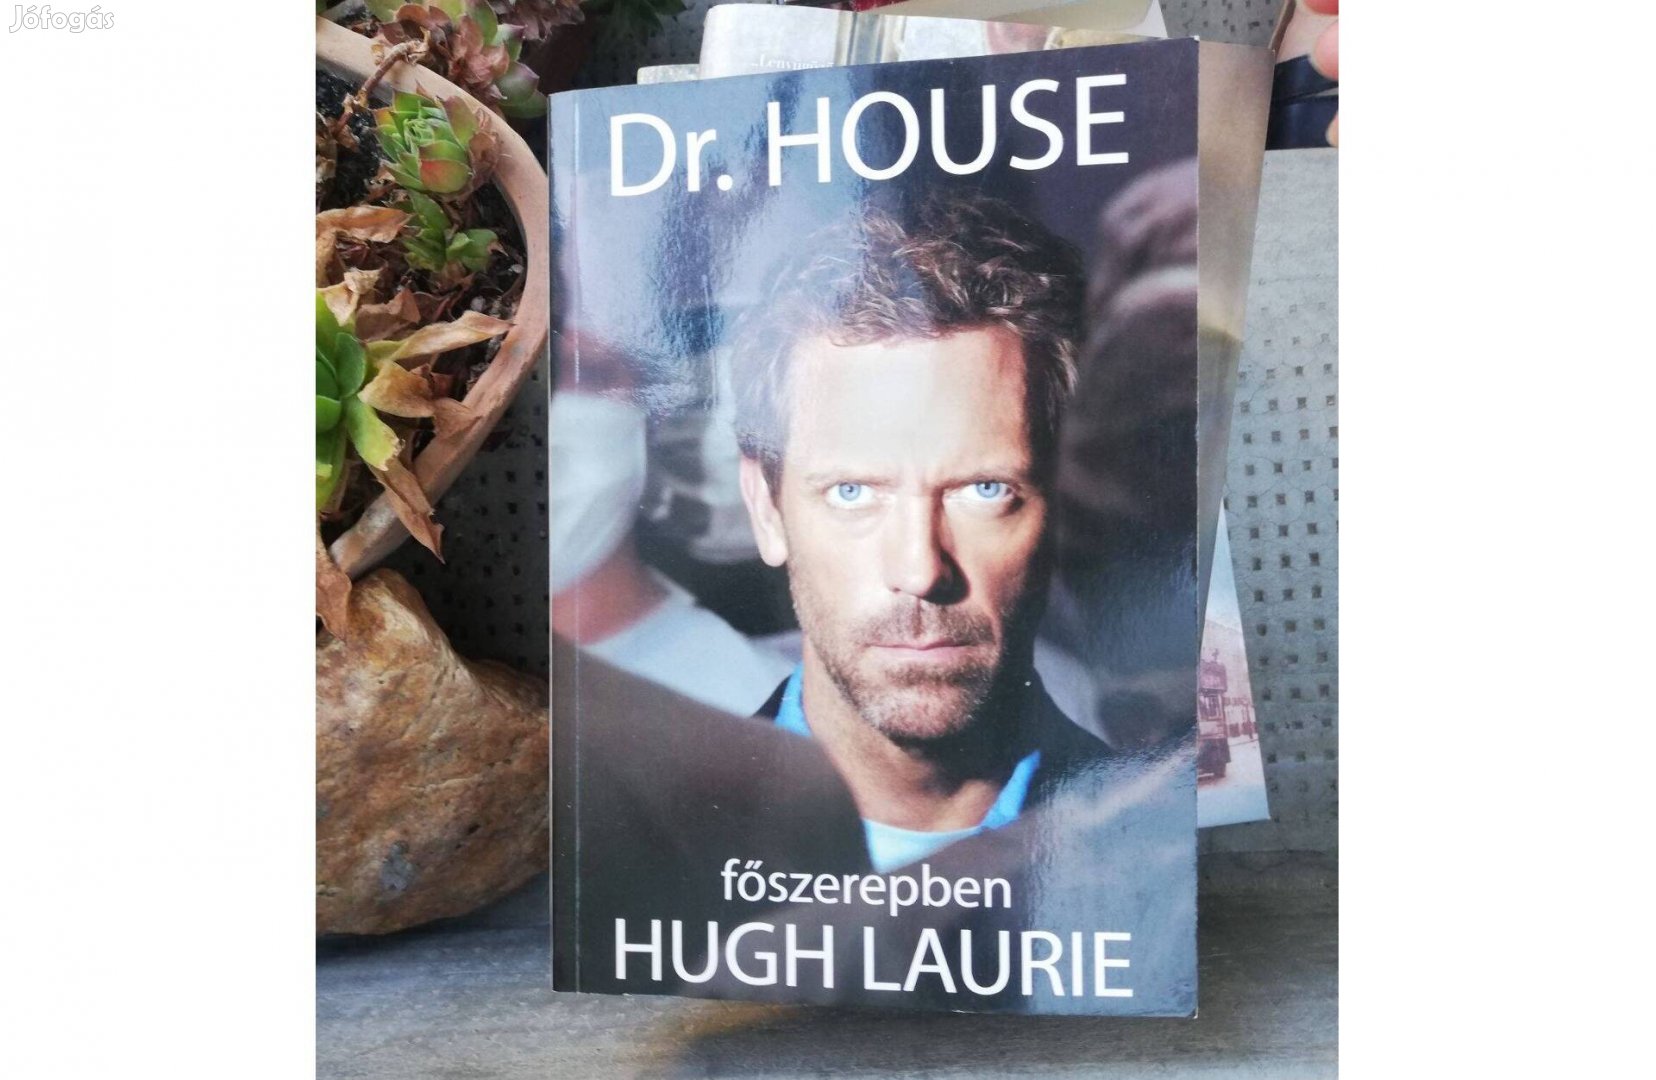 Dr. House főszerepben Hugh Laurie 800 forintért eladó